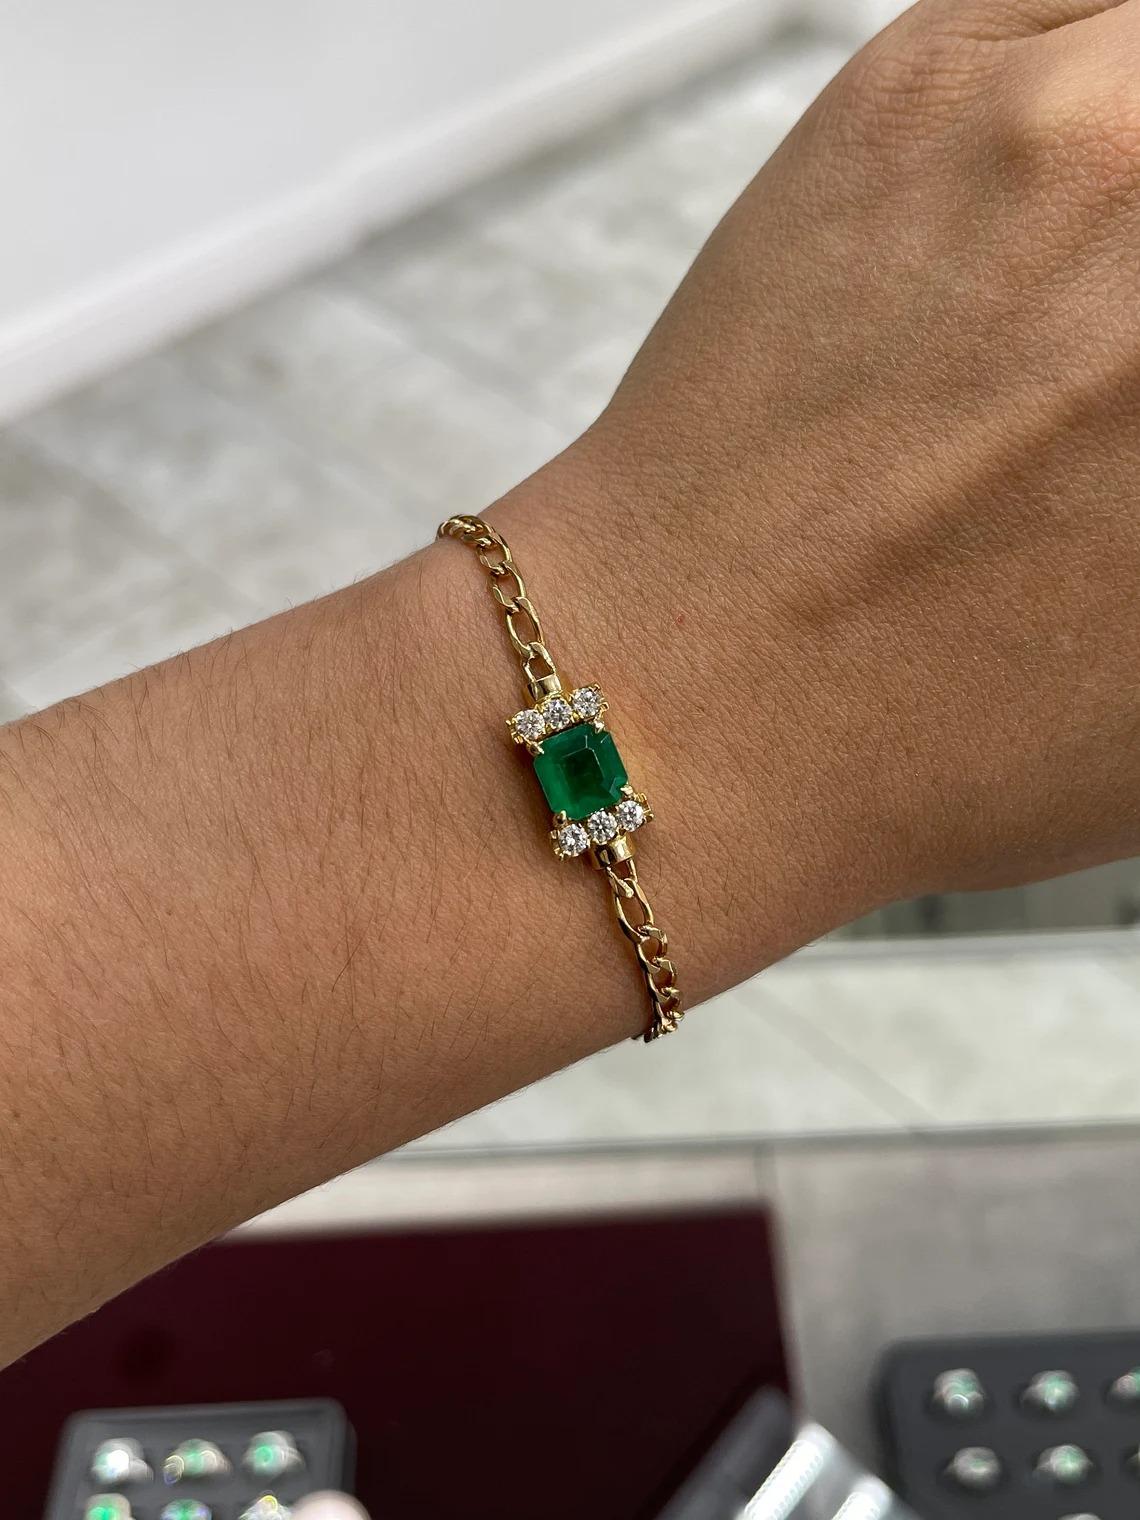 Un remarquable bracelet d'émeraudes et de diamants. La pierre centrale est une émeraude colombienne AAA de haute qualité, sertie à quatre griffes, pesant 2,89 carats et affichant une couleur jaune-vert riche et vive ainsi qu'un excellent lustre. La